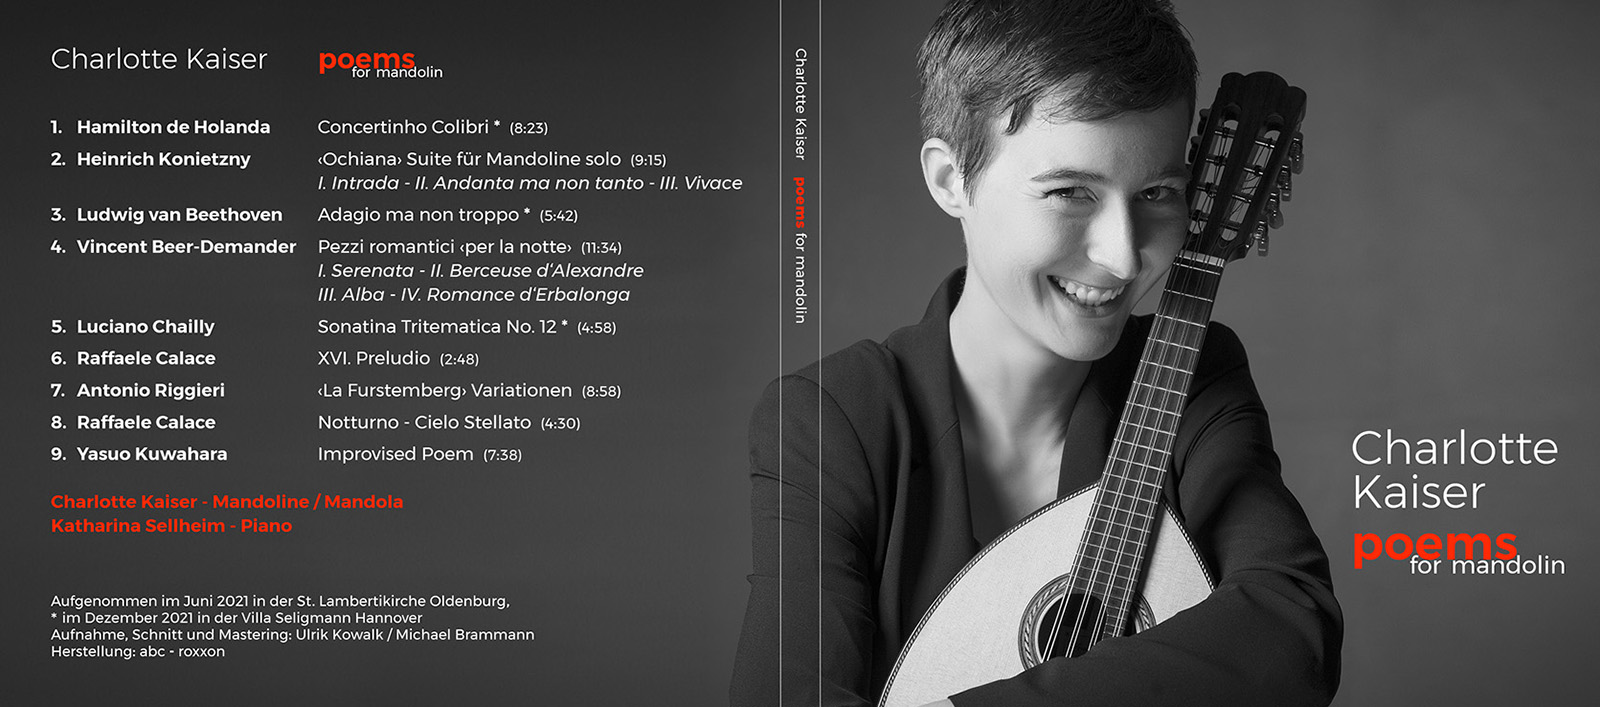 CD Cover Charlotte Kaiser poems for mandolin